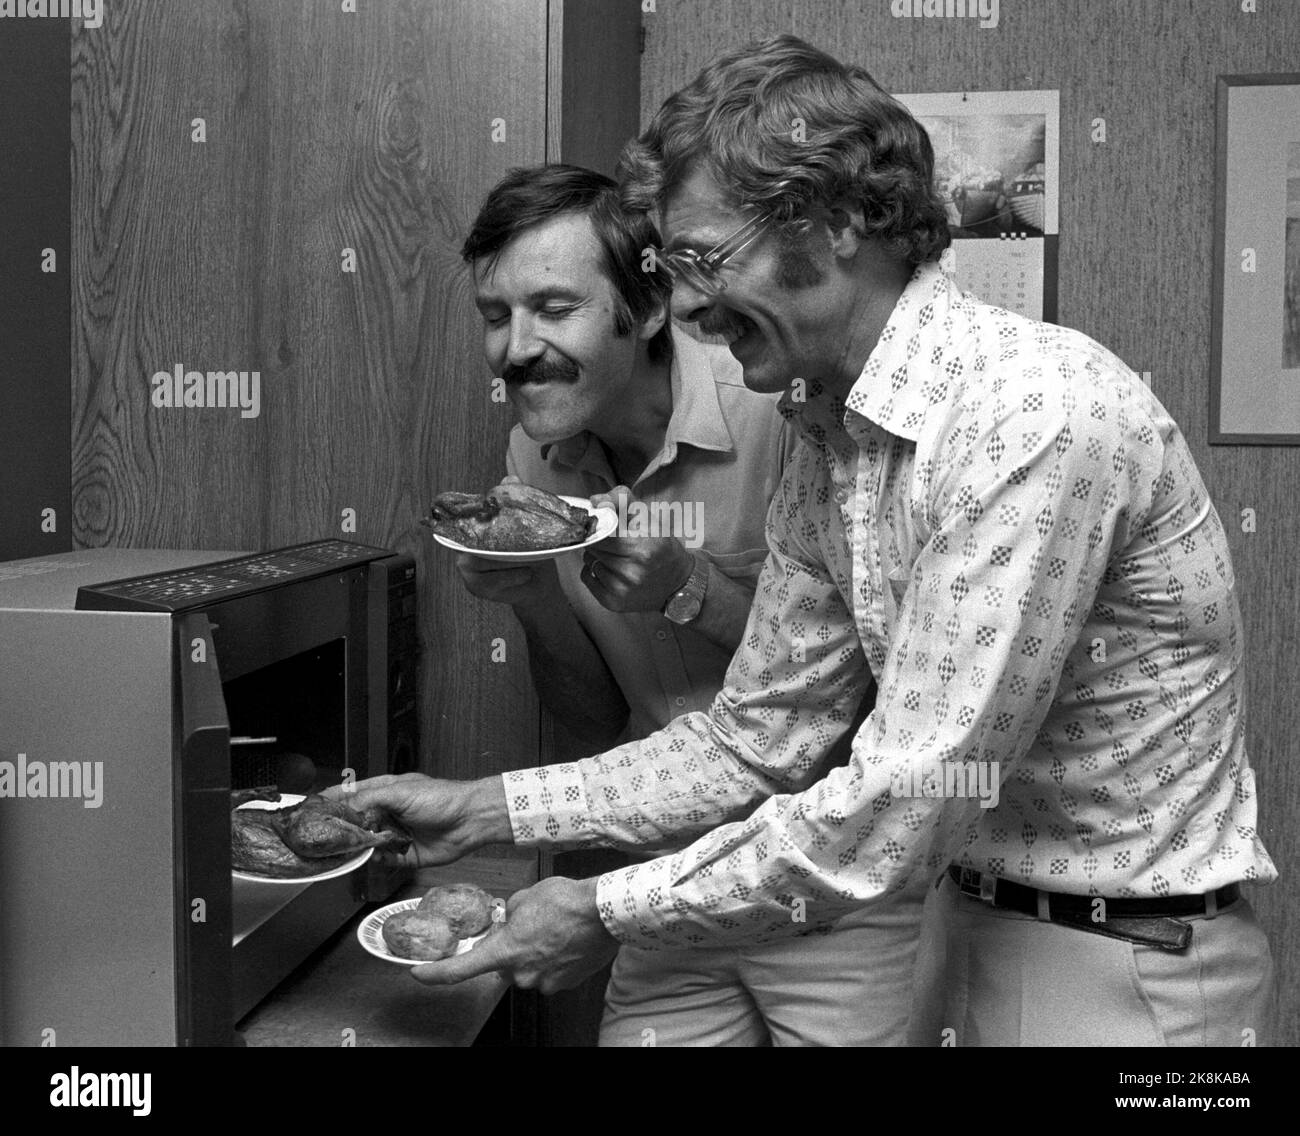 Oslo 27-6-1983. Microonde in NTB. Qui sono Sven Viker Kristiansen e Arne Børcke (th) che scaldano il cibo. Foto: Bjørn Sigurdsøn, NTB / NTB Foto Stock